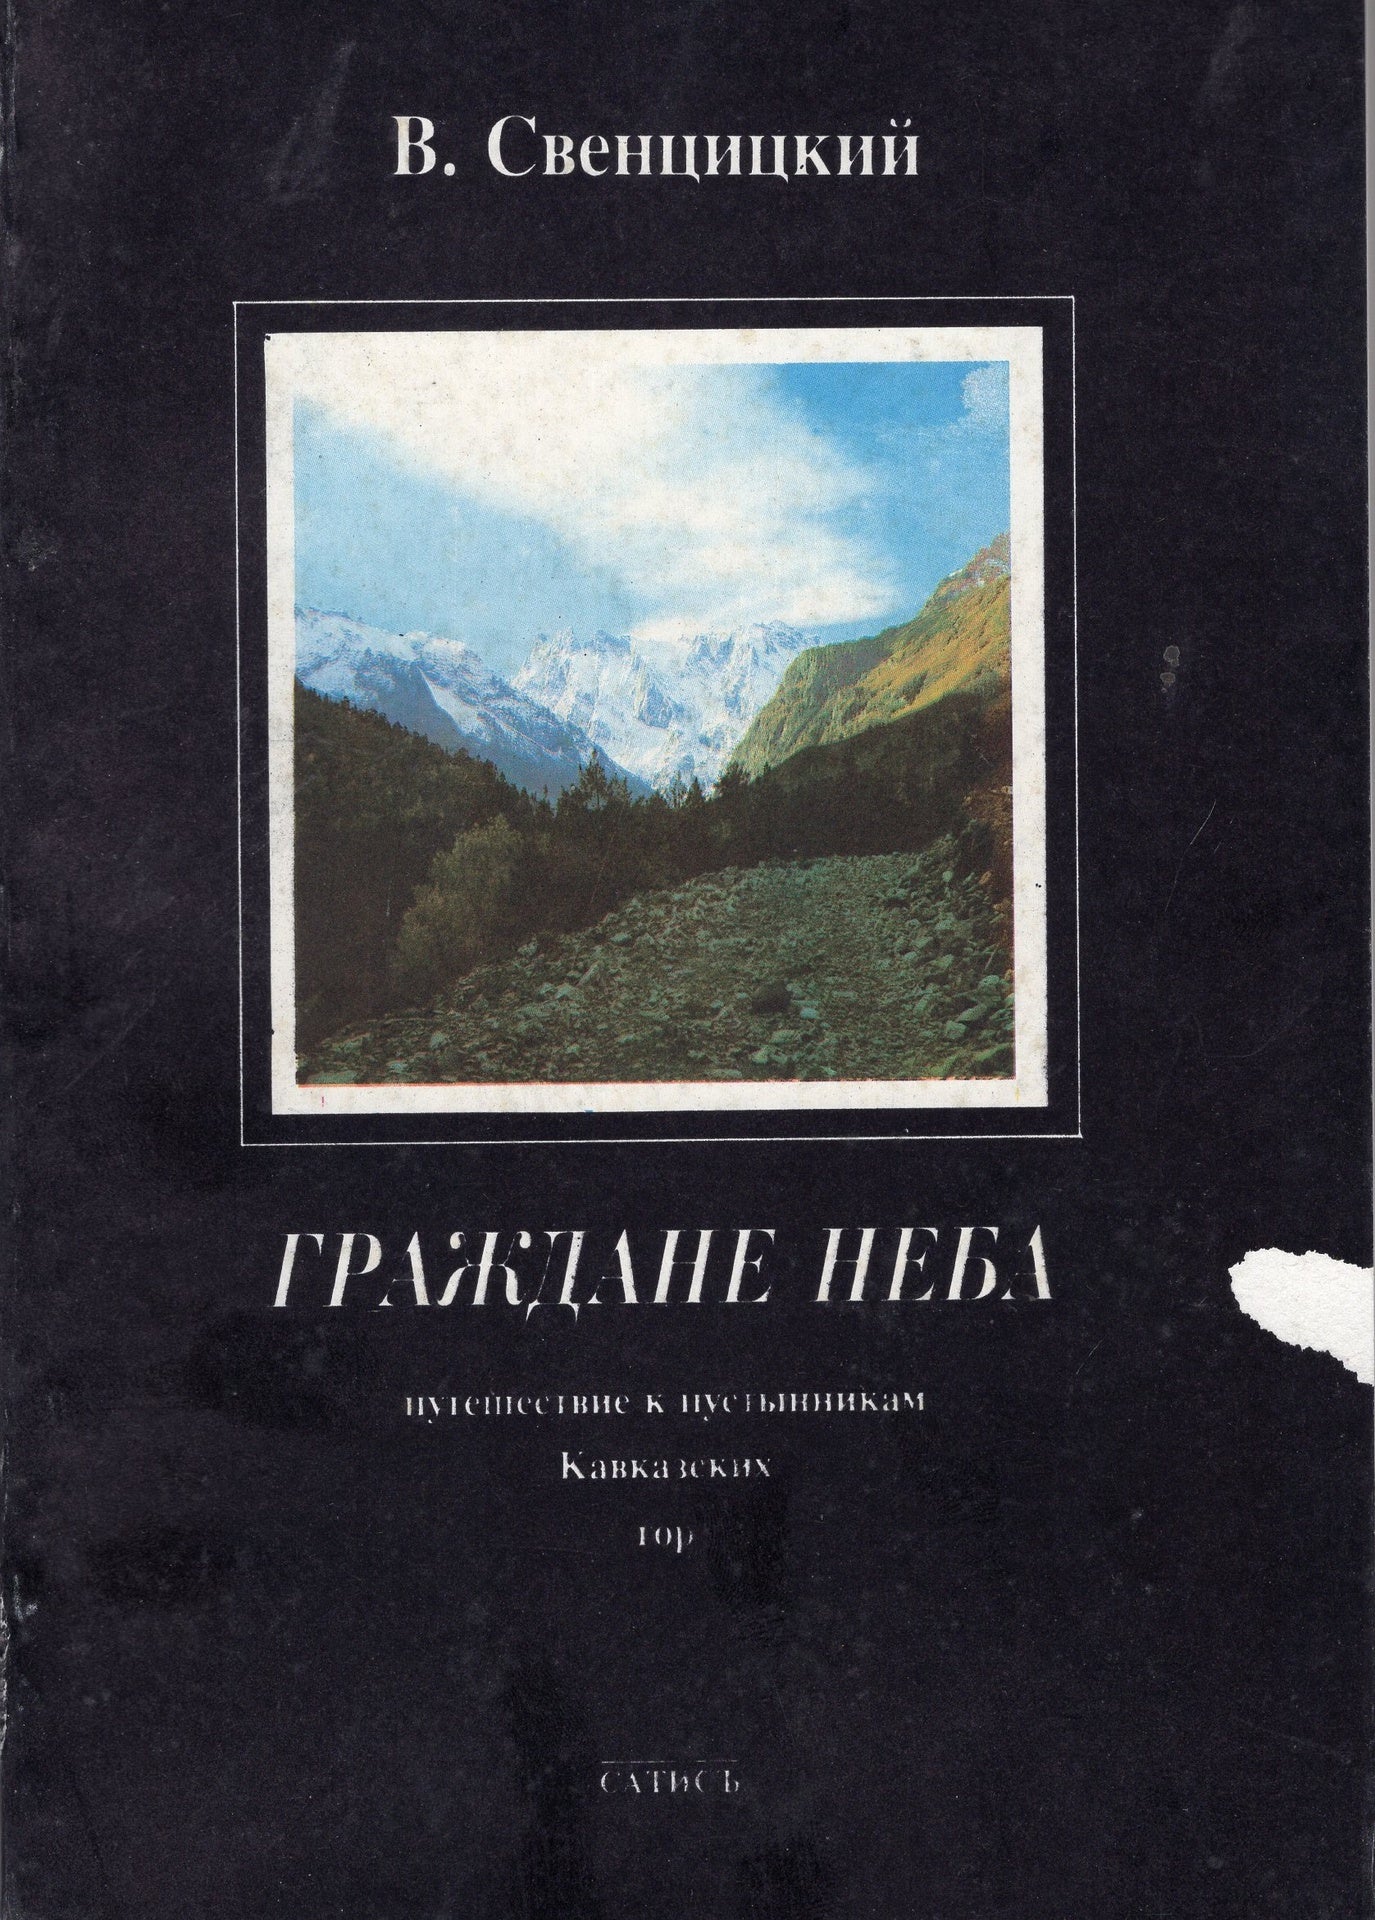 Граждане неба: путеводитель к пустынникам Кавказких гор